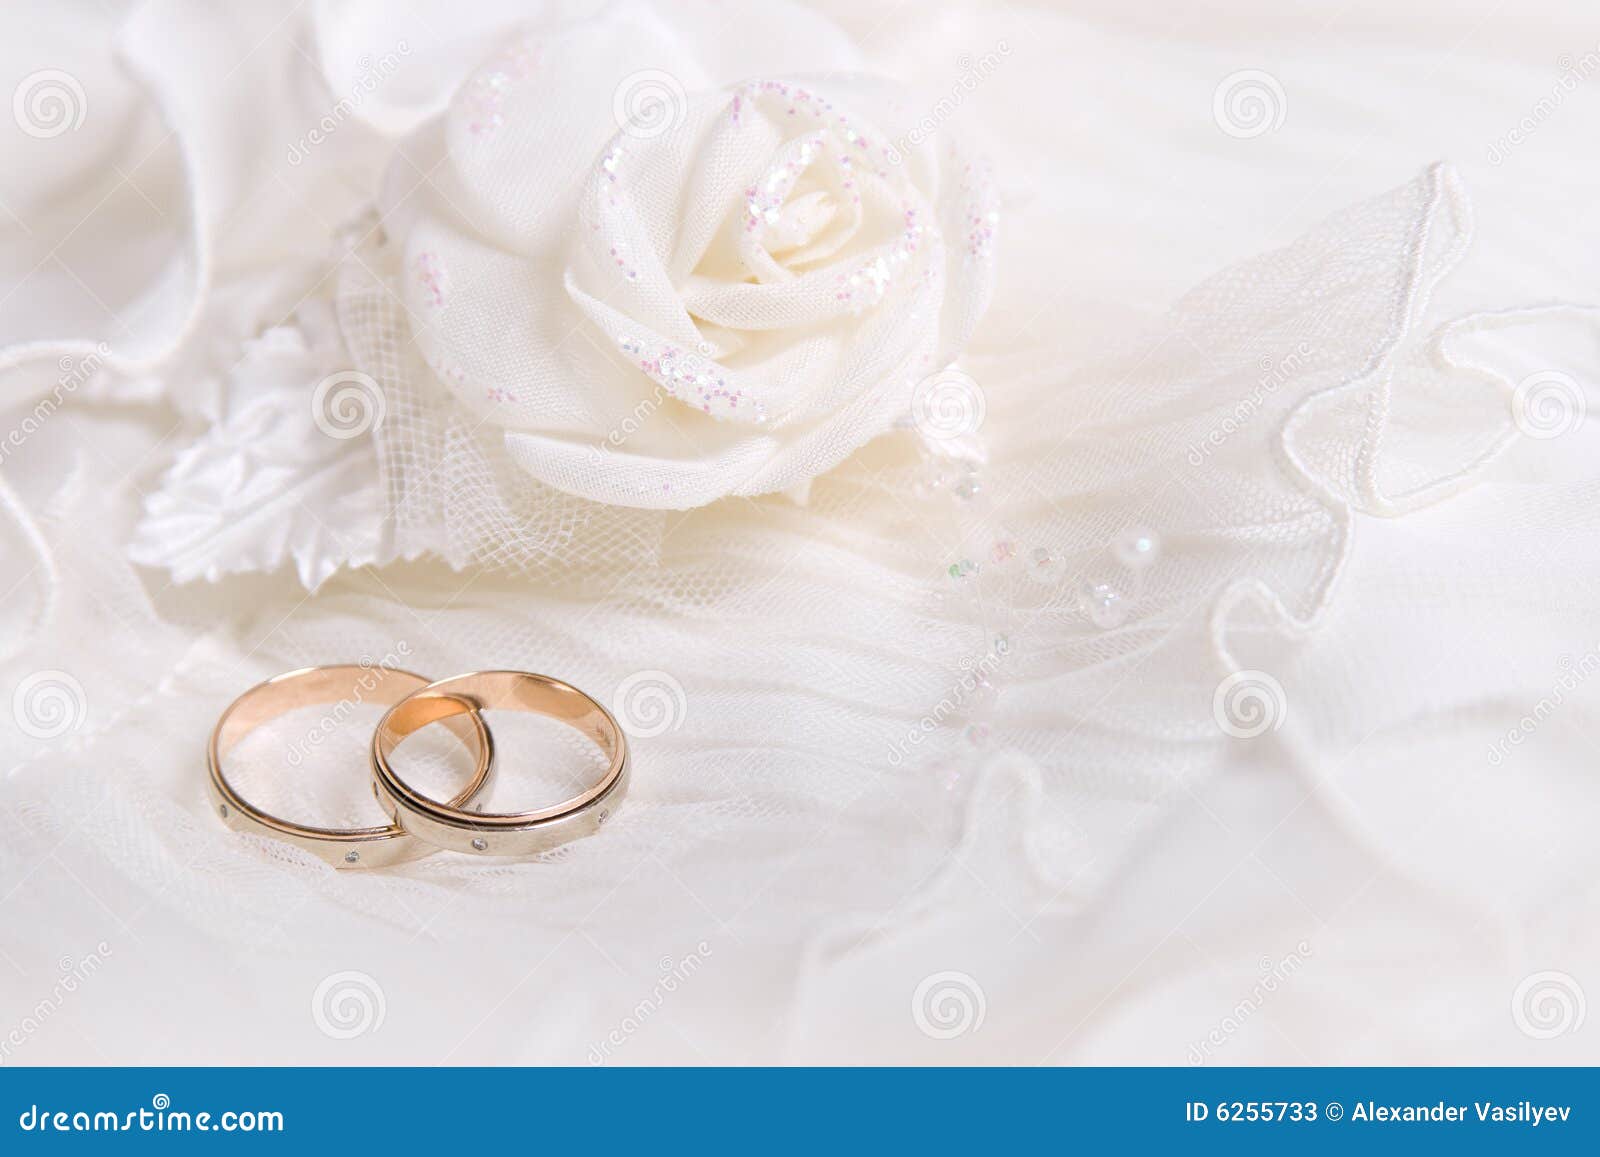 wedding rings white rose 6255733